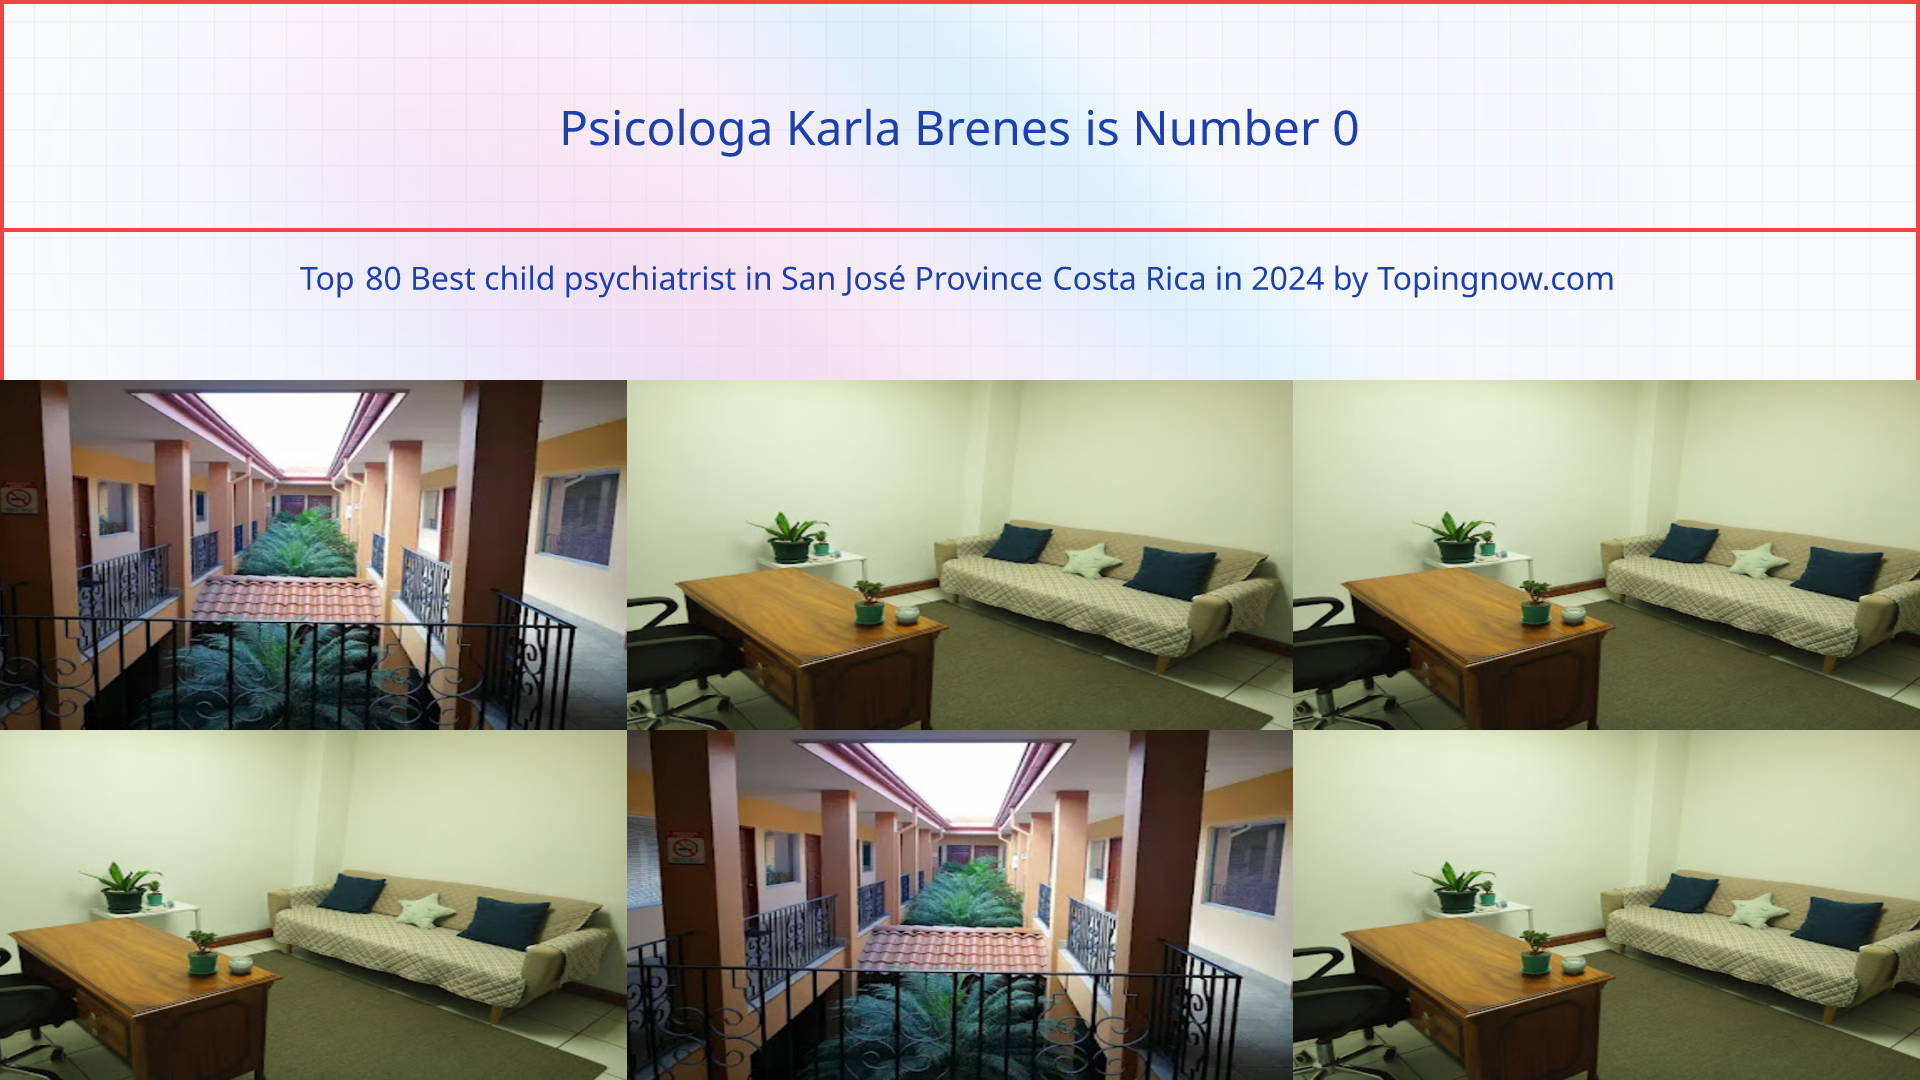 Psicologa Karla Brenes: Top 80 Best child psychiatrist in San José Province Costa Rica in 2024